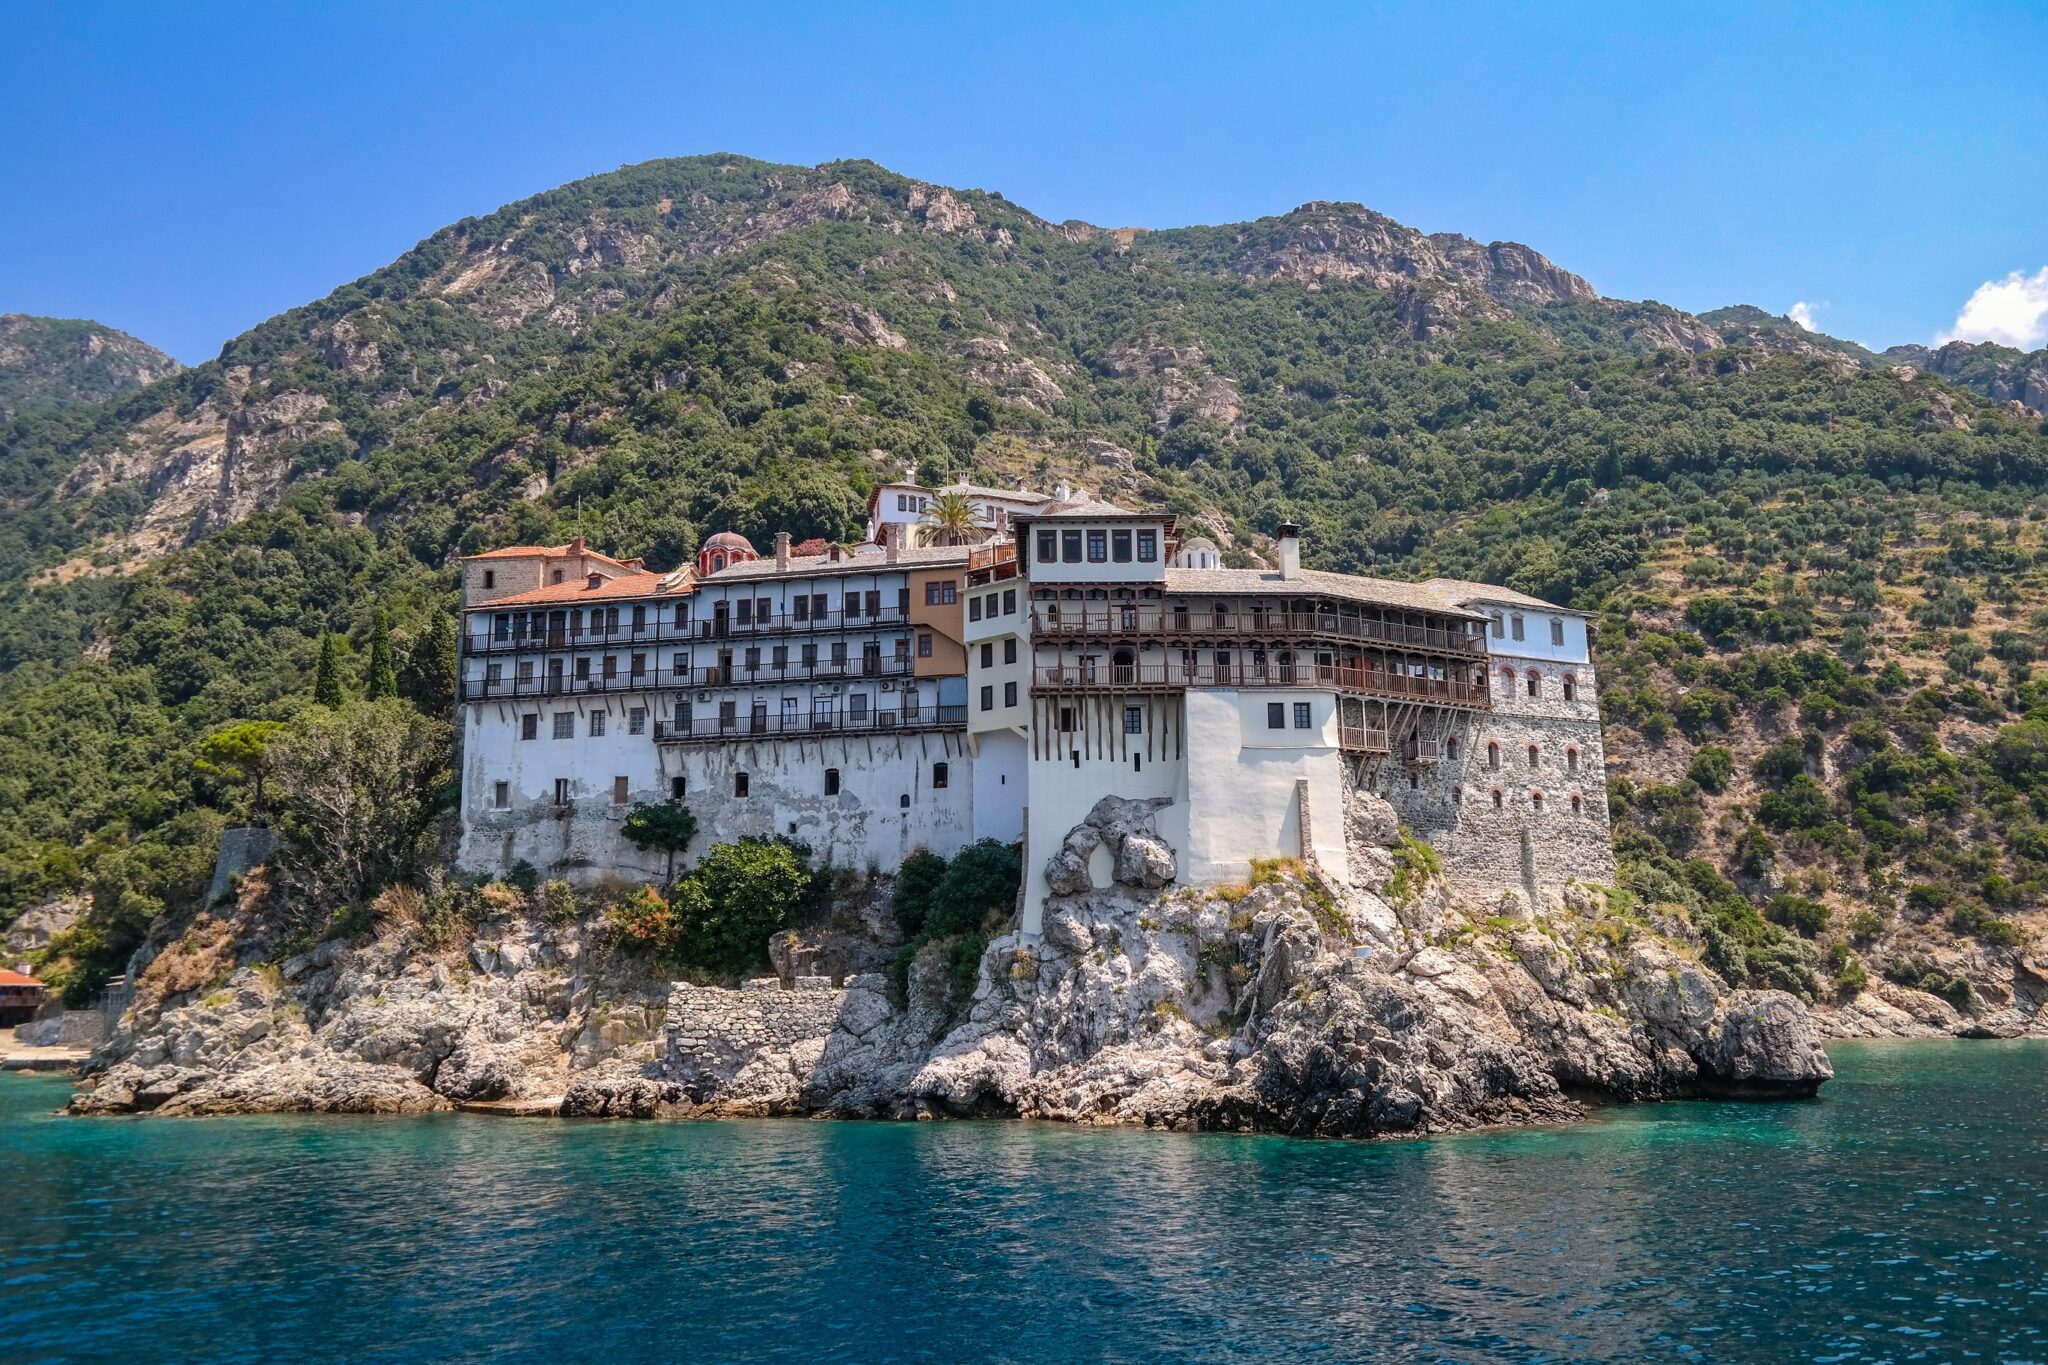 Άγιο Όρος: Περιήγηση στα σημαντικότερα και πιο εντυπωσιακά μοναστήρια ενός μυστηριακού τόπου | travel.gr